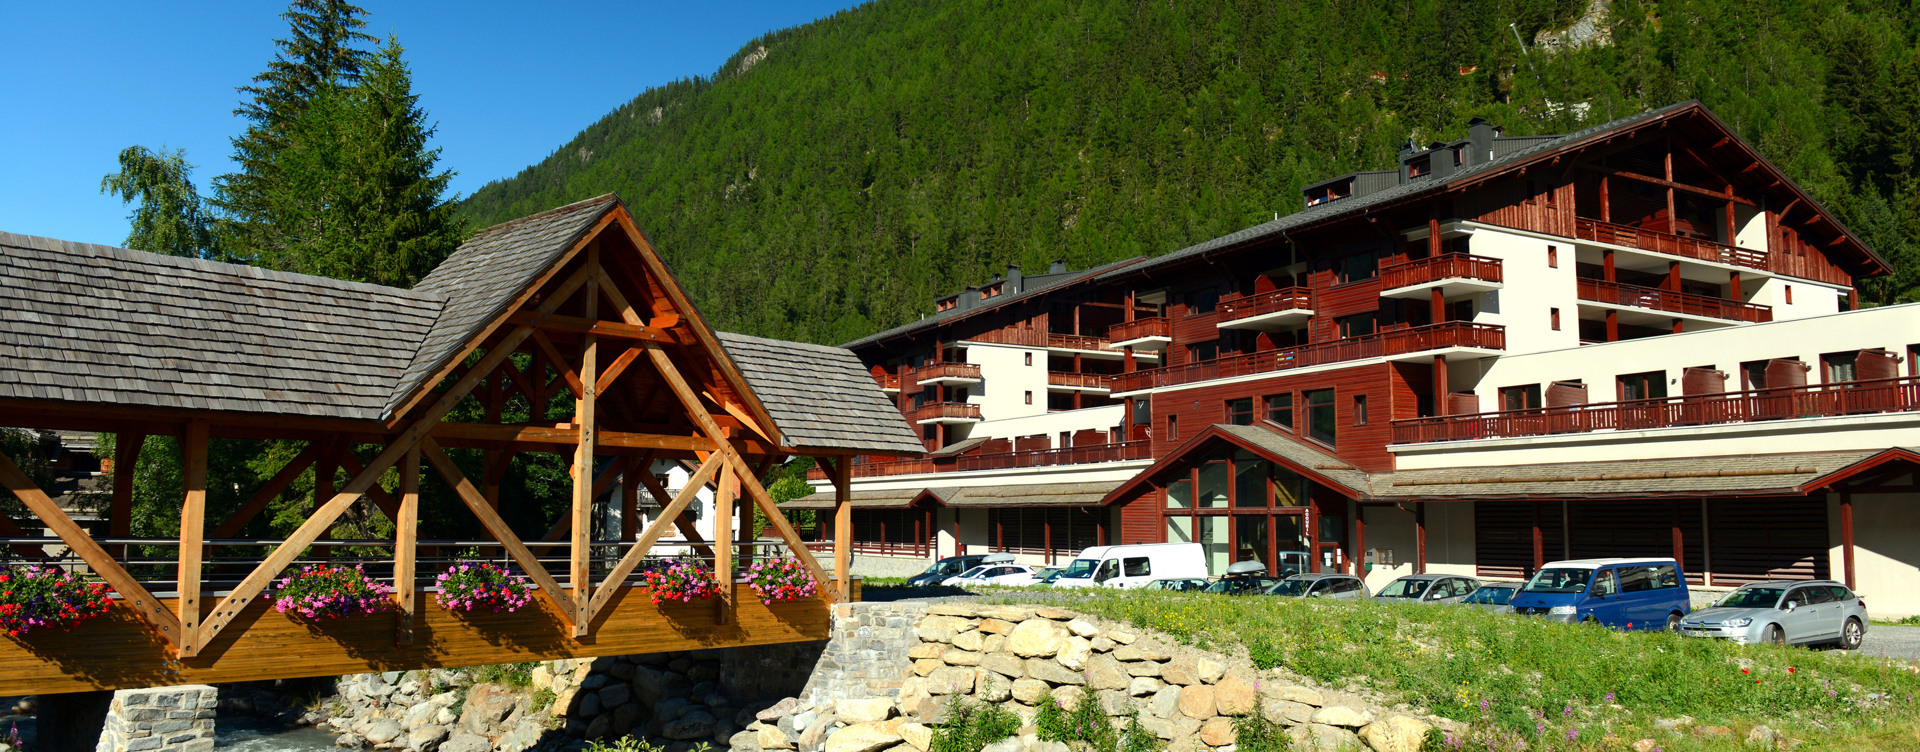 Entdecken Sie unser stimmungsvolles 
Resort in Vallorcine, in den französischen Alpen gelegen